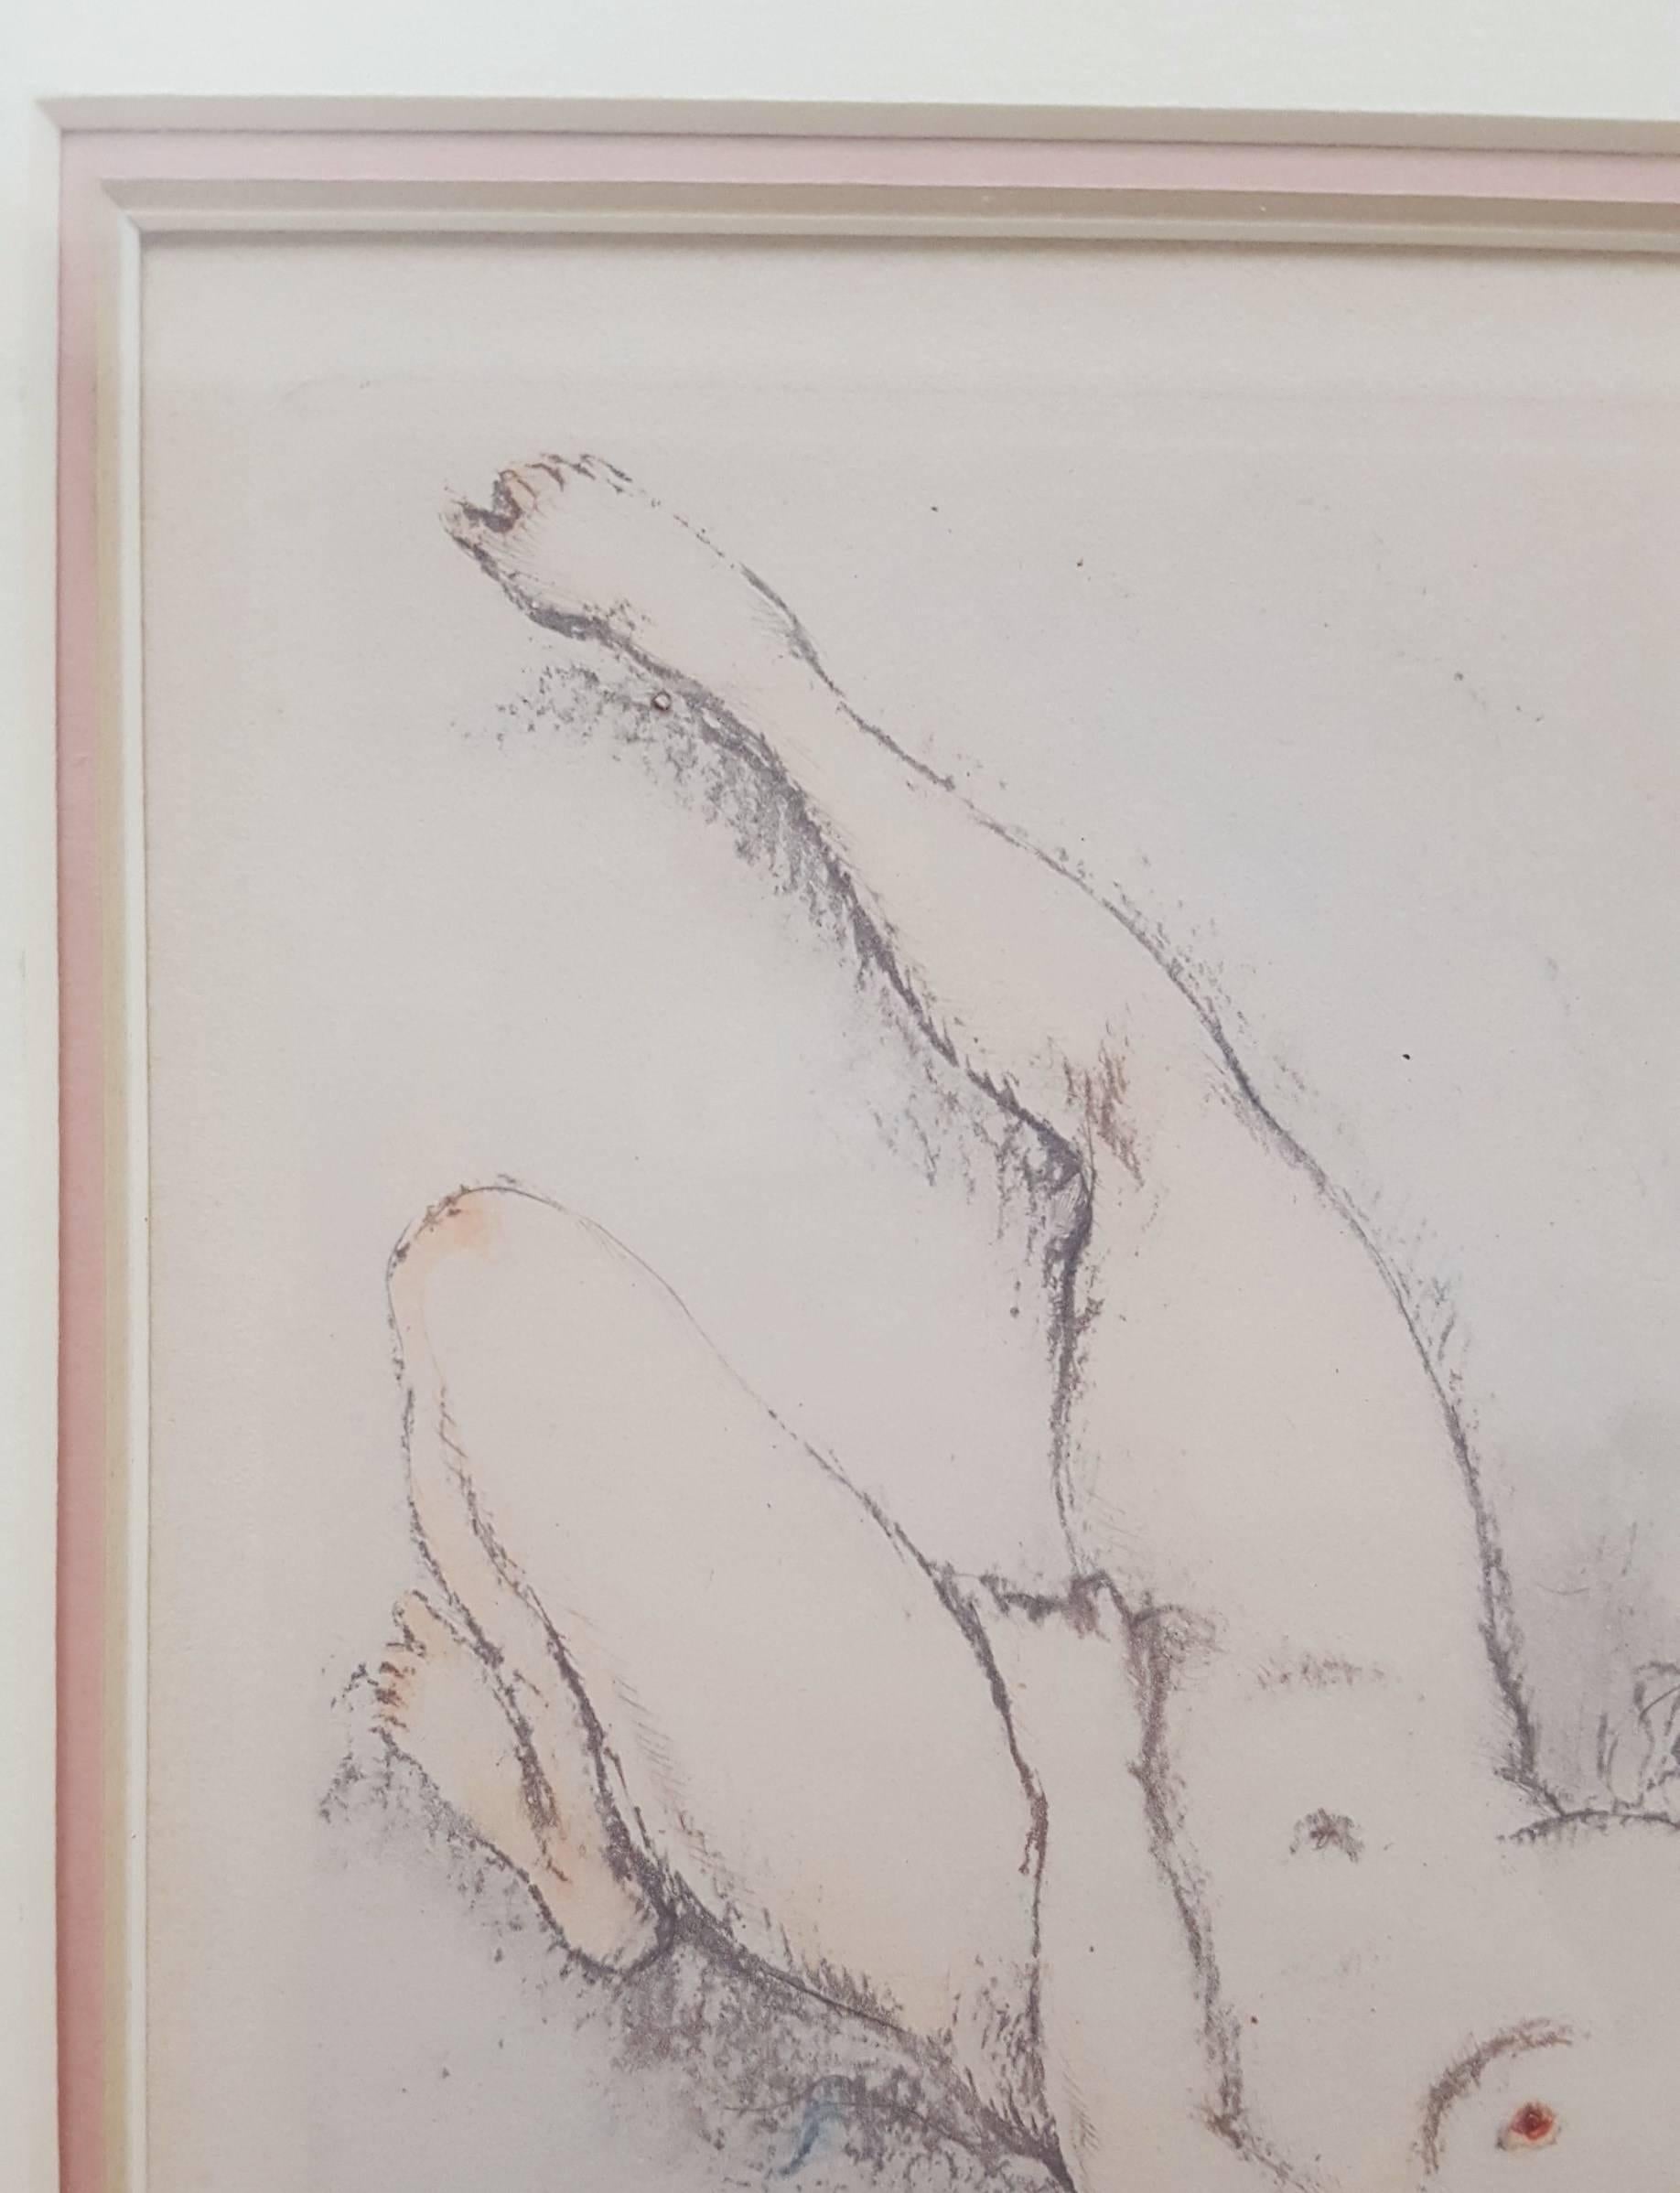 My Pleasure - Gray Nude Print by Louis Icart